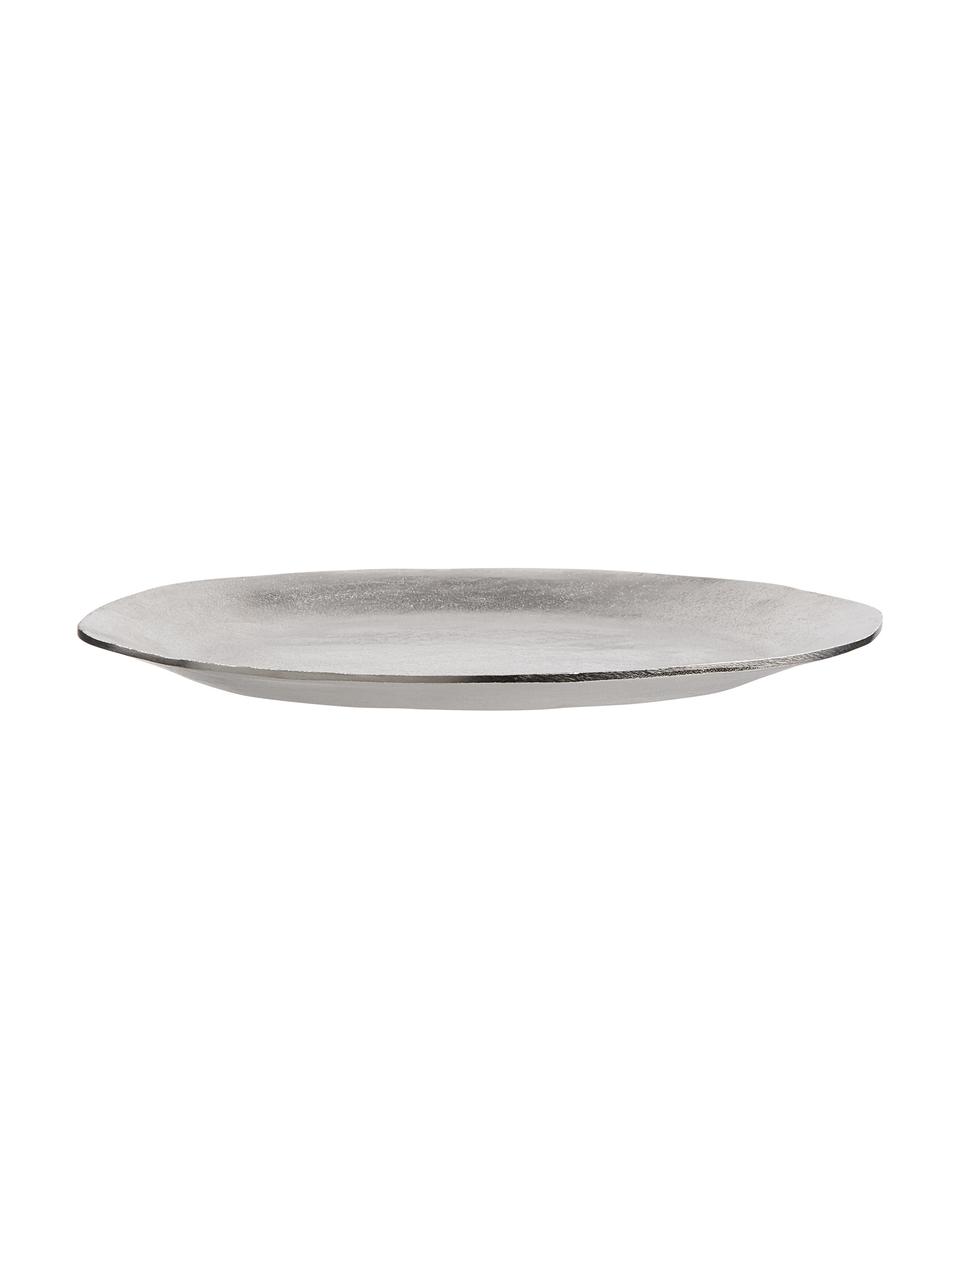 Vassoio decorativo grigio chiaro Banquet, Alluminio rivestito, Grigio chiaro, Ø 32 cm